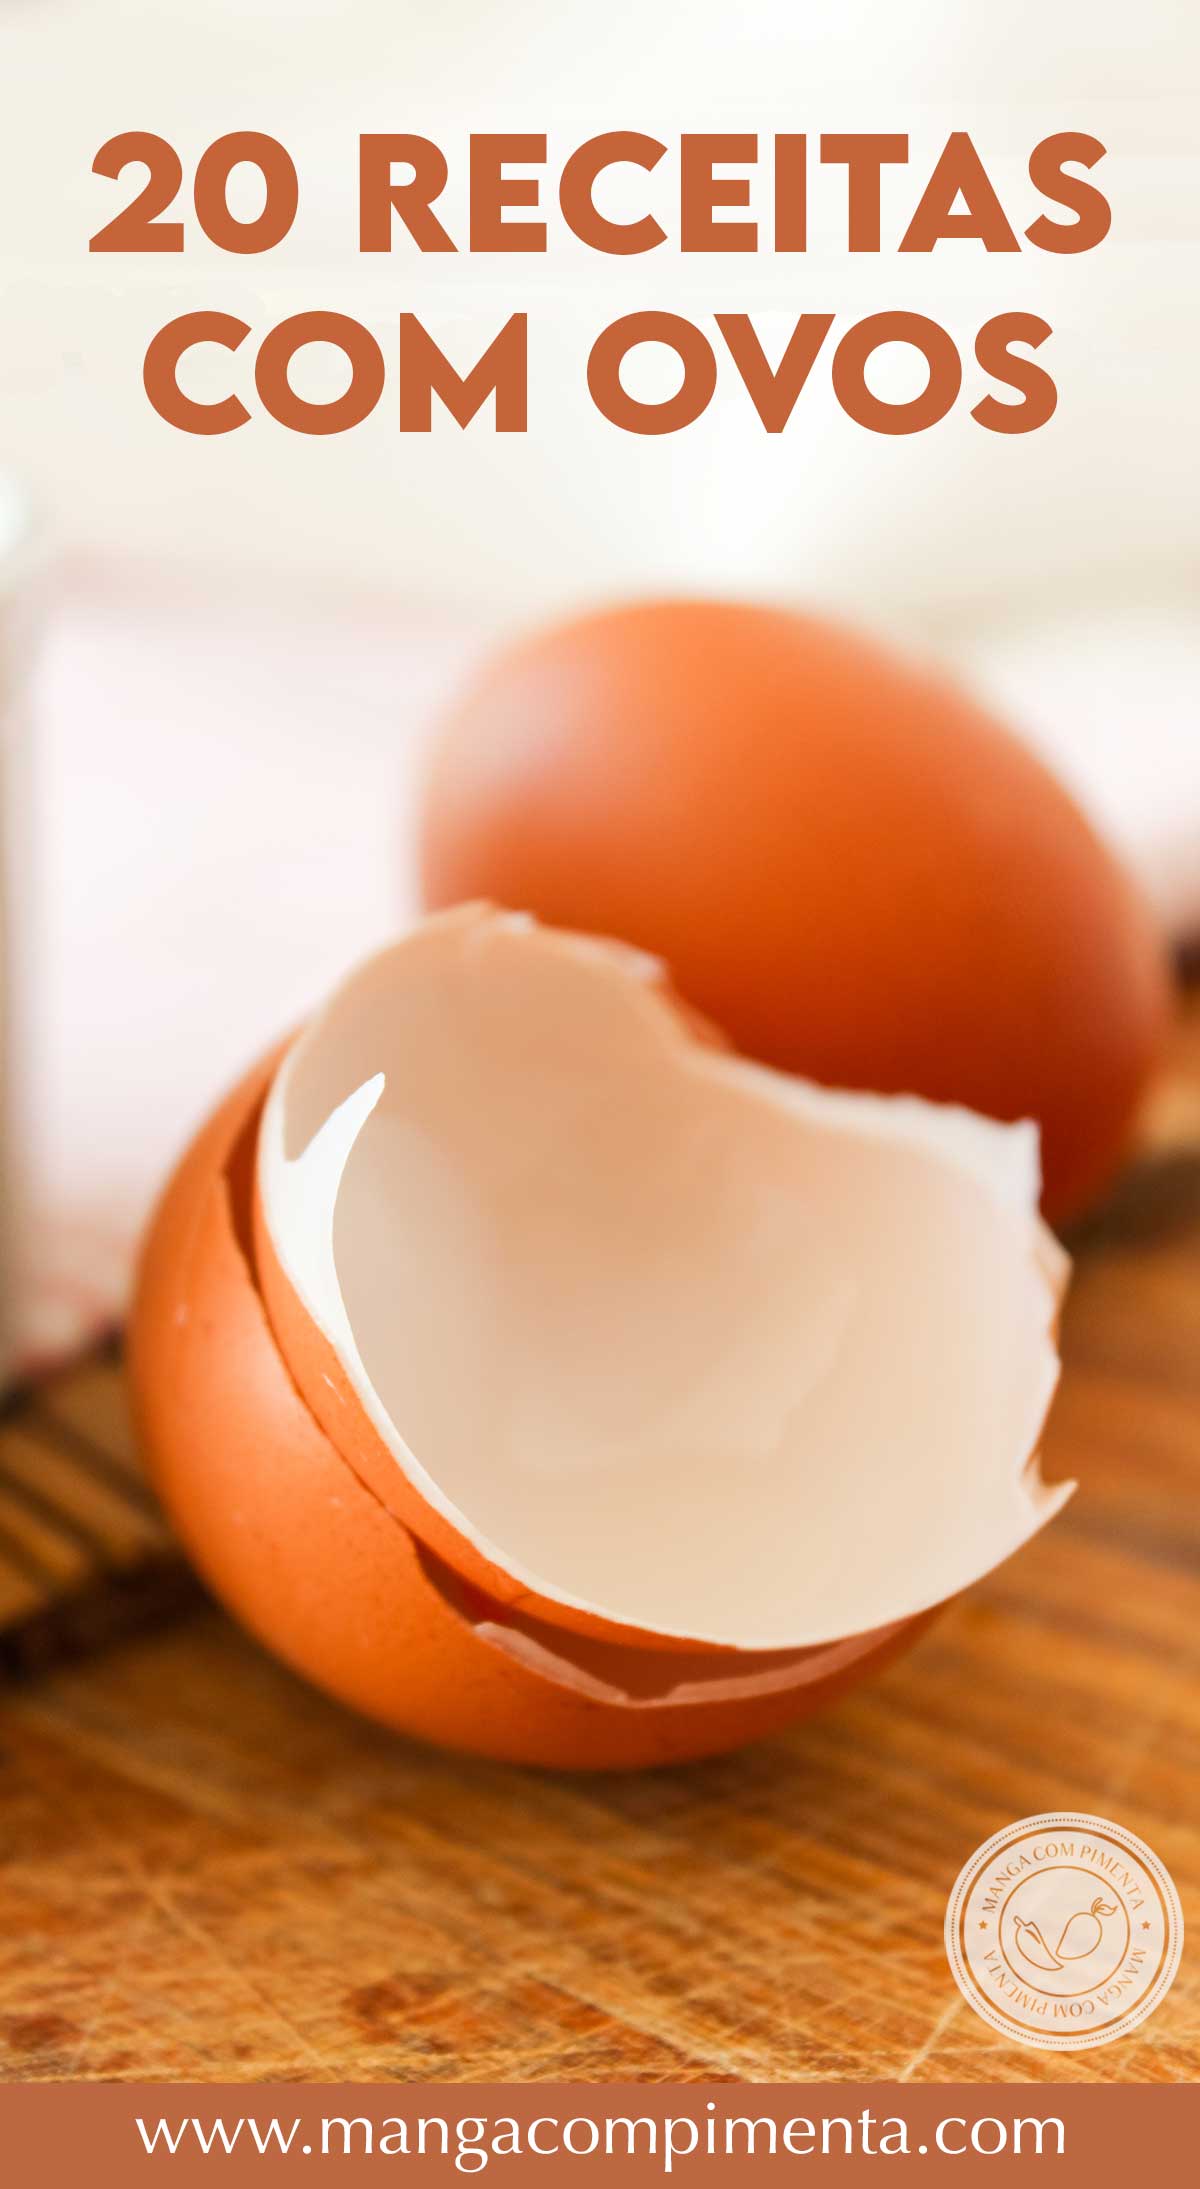 Ovos para café da manhã - veja a variedade de receitas com ovos para a primeira refeição do dia.